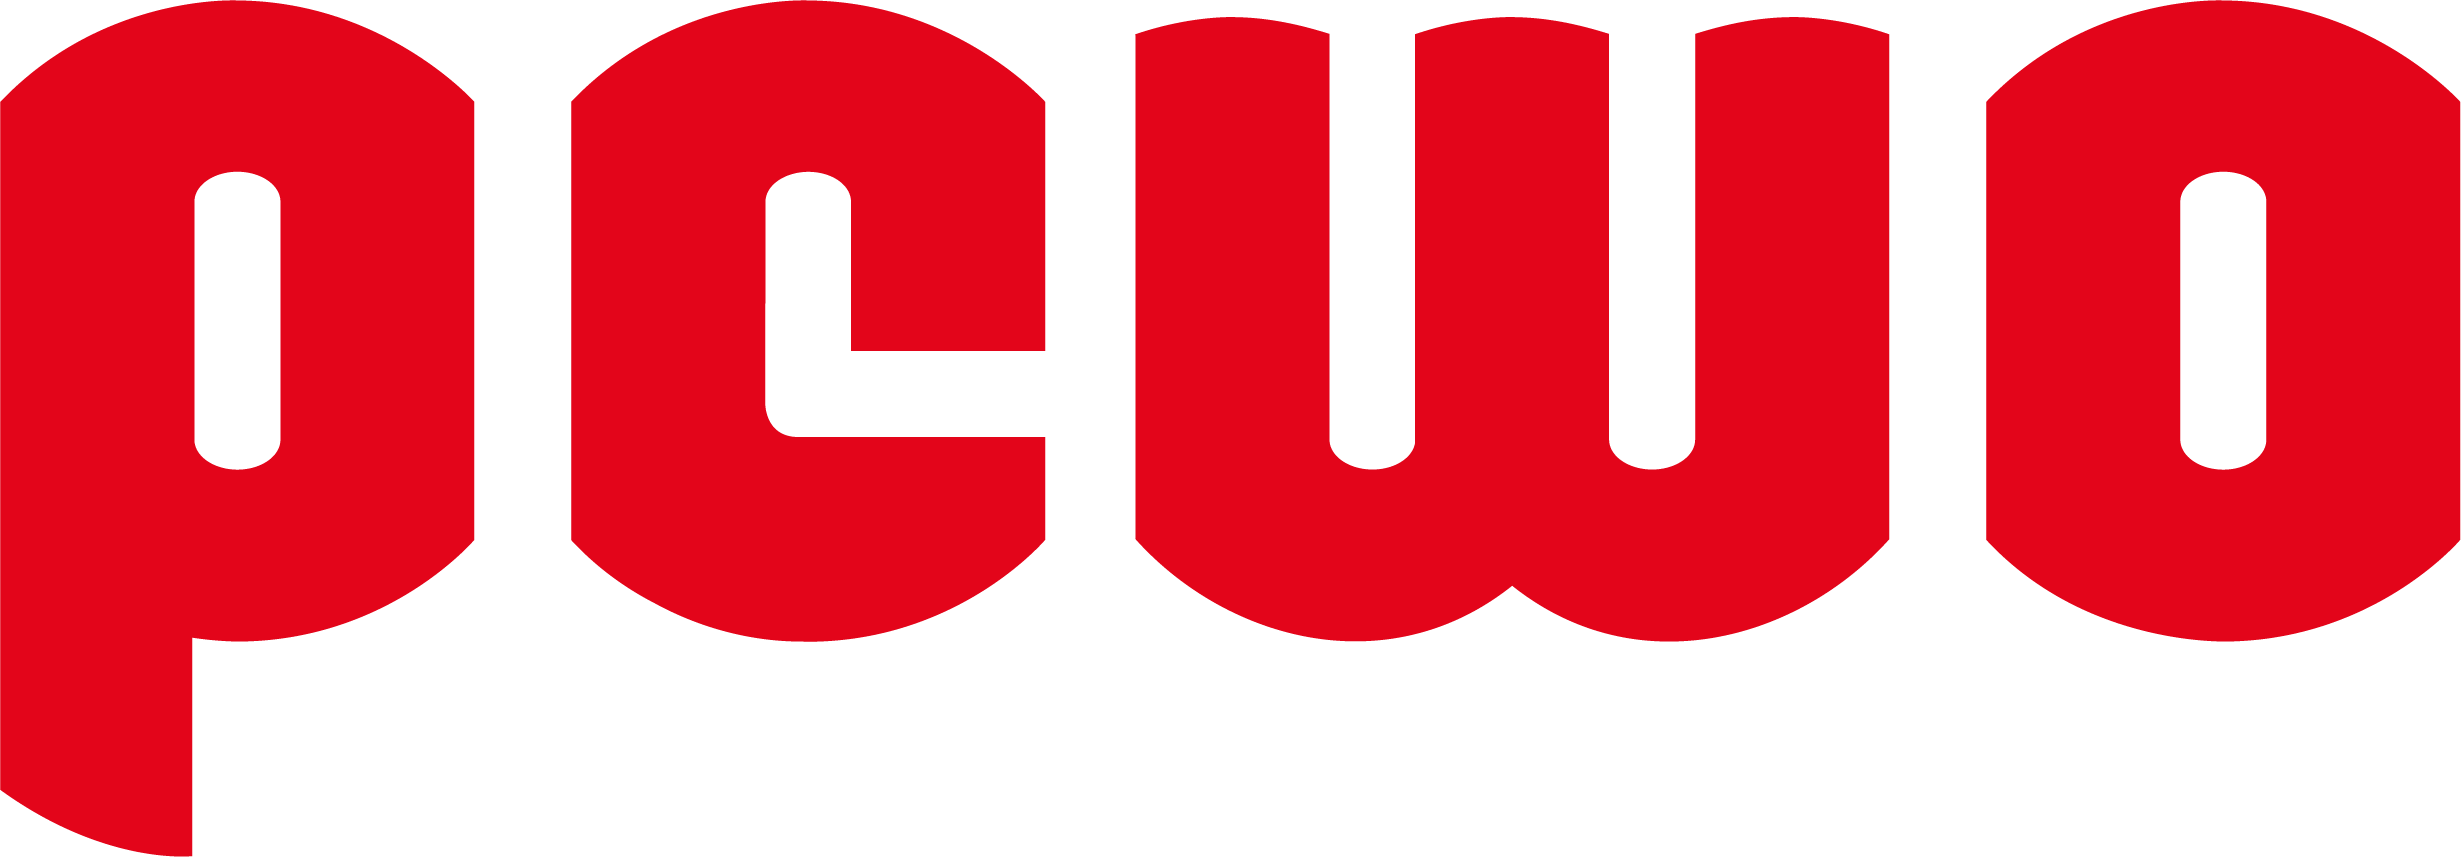 PEWO Logo Red